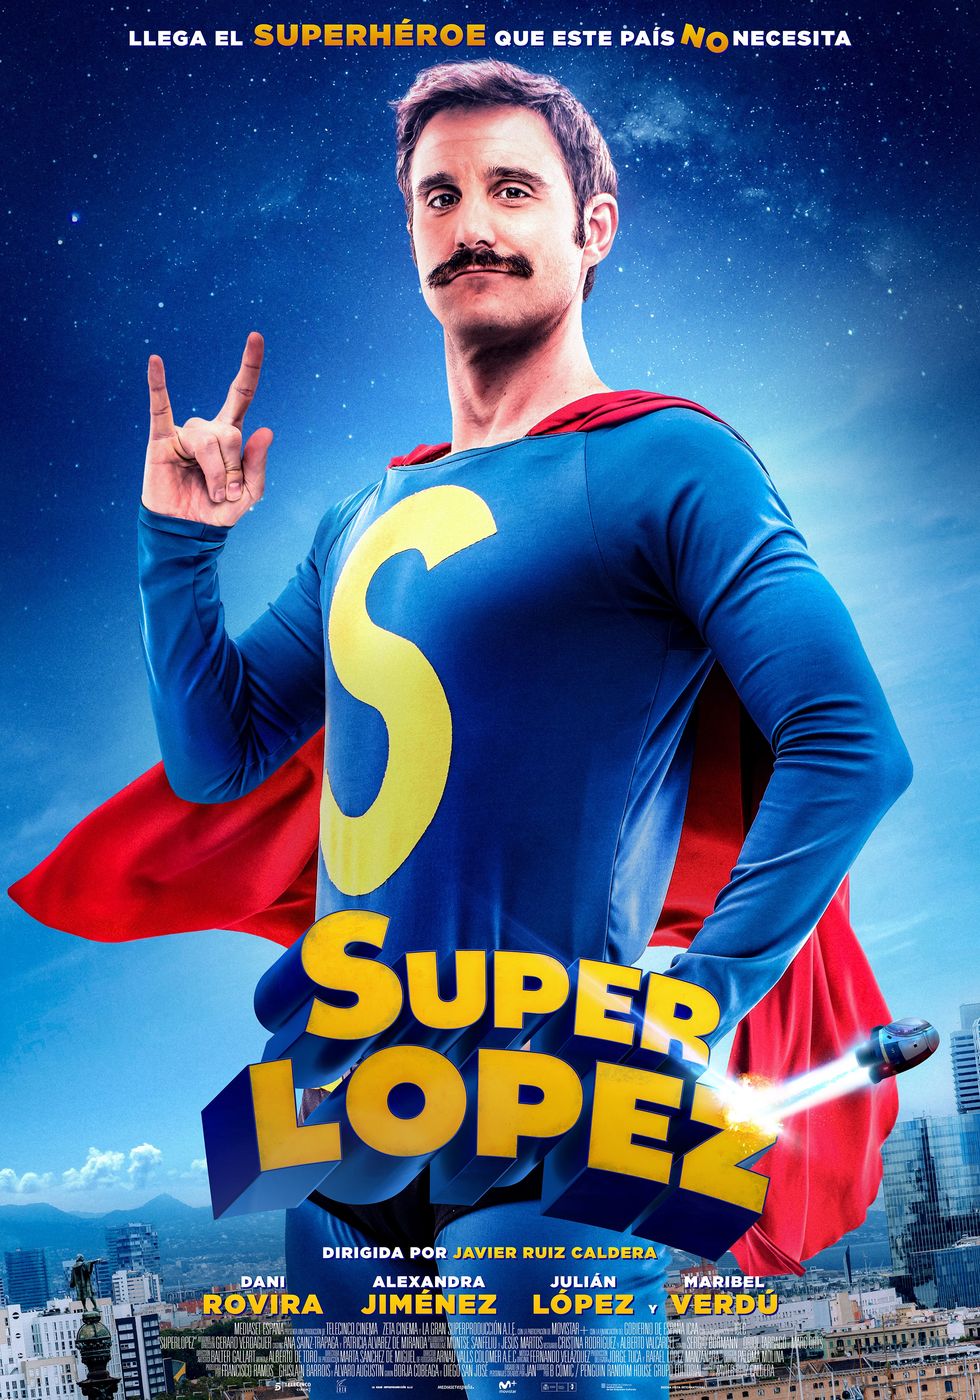 Superlopez-poster